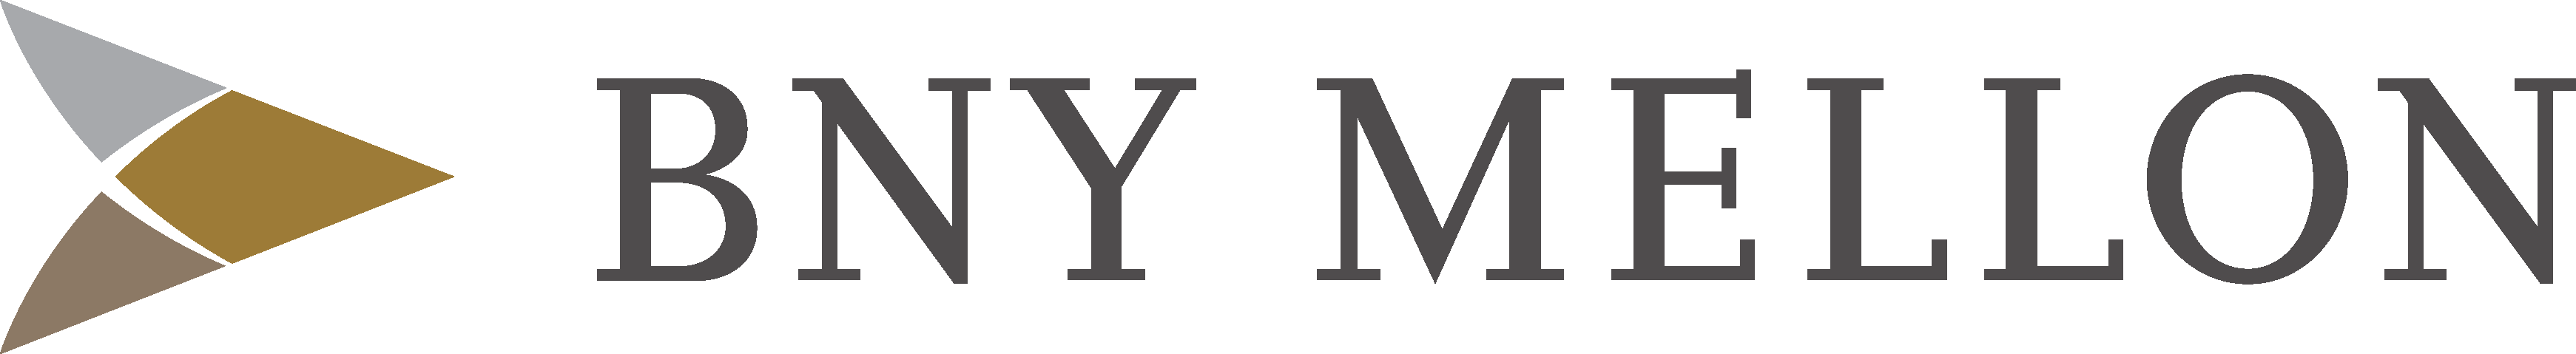 BNY Mellon Logo - Bny Mellon Logo Free Vector Download - FreeLogoVectors